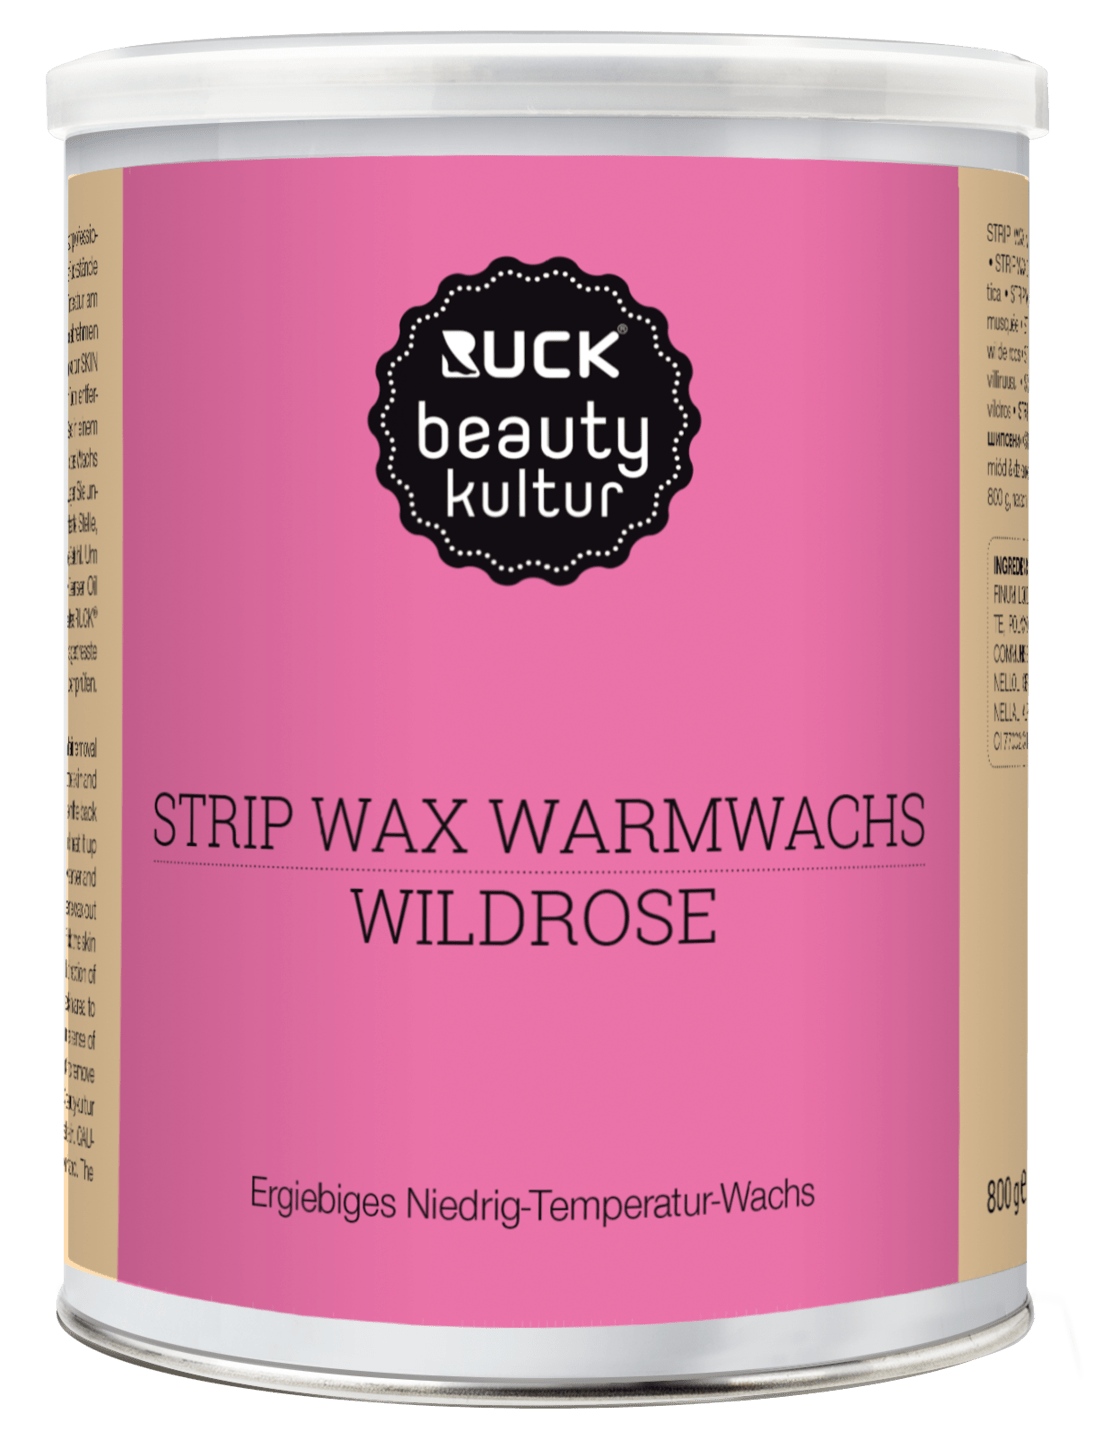 RUCK beautykultur - STRIP WAX Warmwachs, 800 g in pink